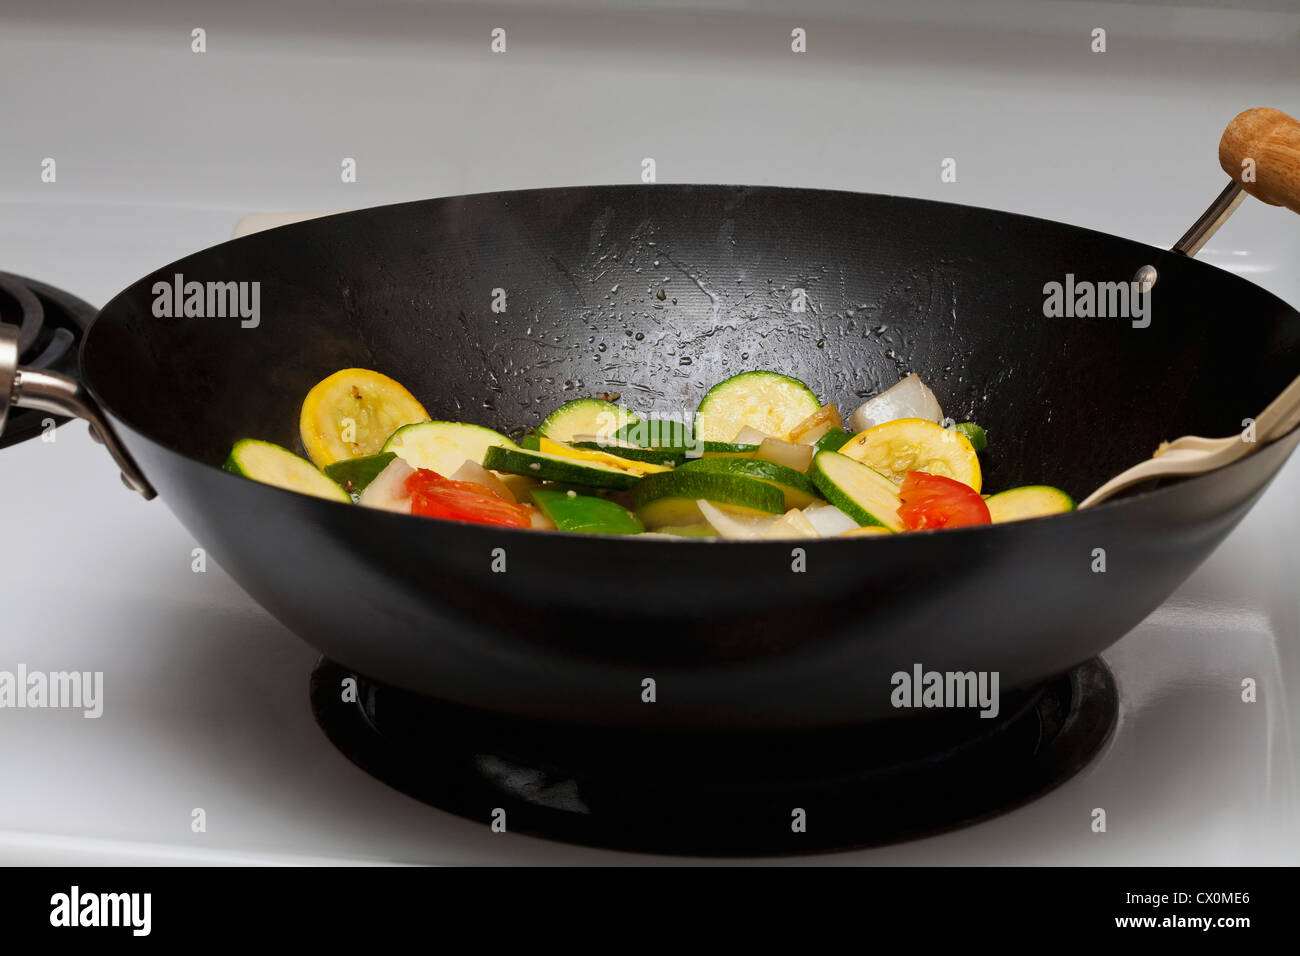 Gelber Kürbis, Zucchini, Tomaten, Zwiebeln und Knoblauch in einem  chinesischen Wok kochen Stockfotografie - Alamy